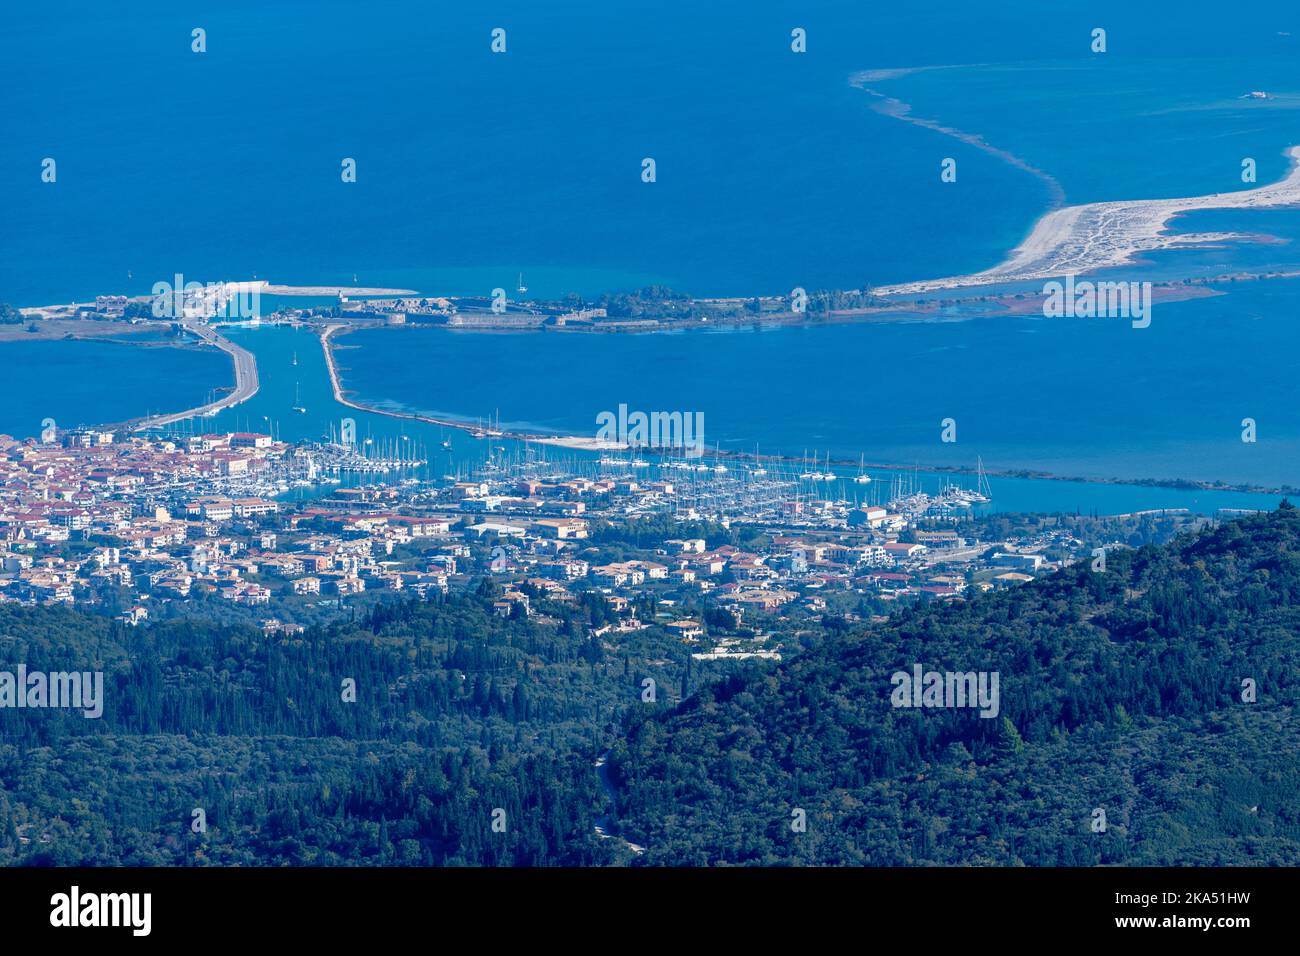 Eine Bergansicht der Insel Lefkada, Griechenland, zeigt die Hauptstadt und den Damm, der mit dem Festland verbunden ist. Stockfoto